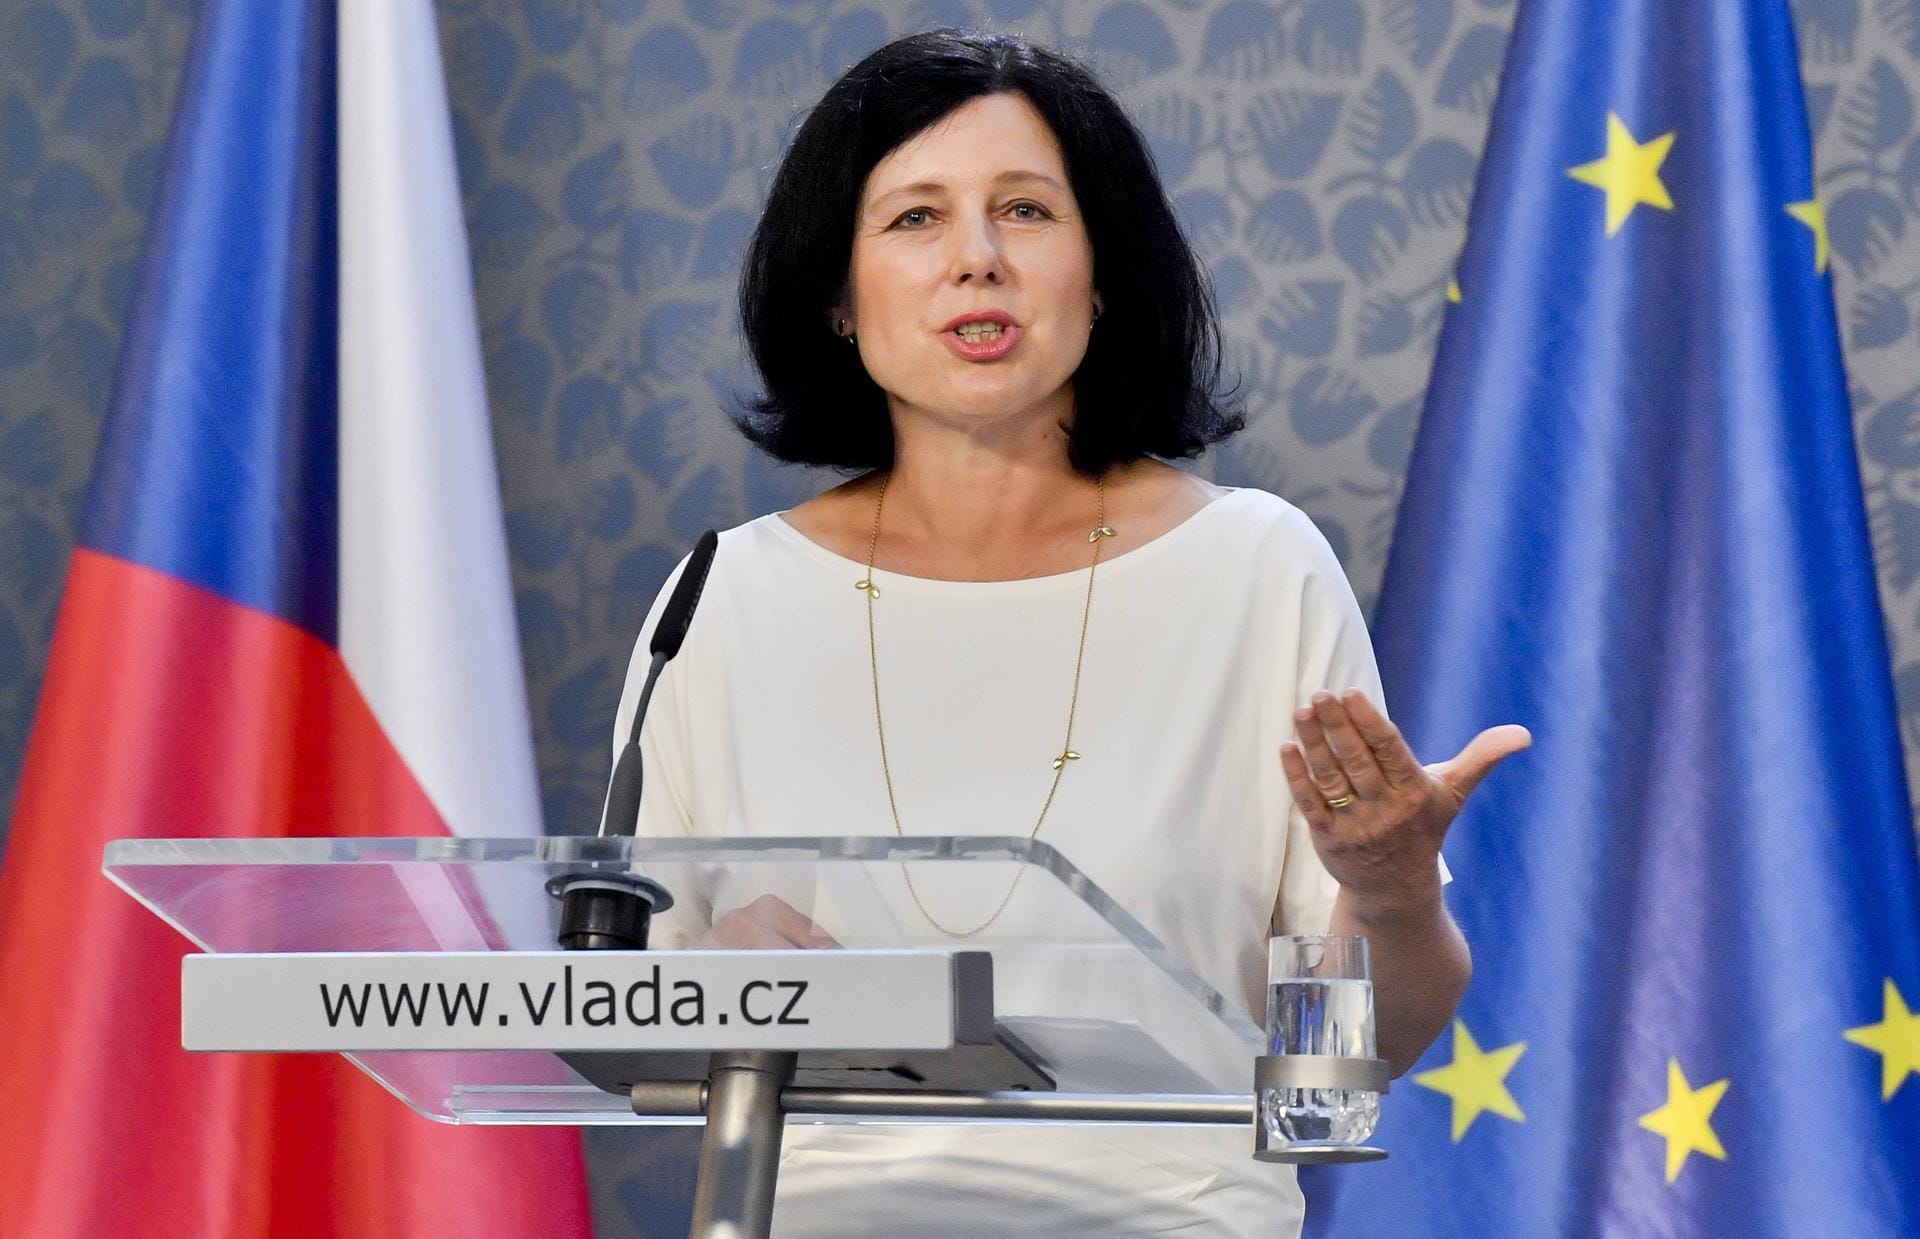 Vera Jourova, Tschechien: Die 55-Jährige ist EU-Kommissarin für Justiz, Verbraucherschutz und Gleichstellung. Sie erhält das Ressort Werte und Transparenz.